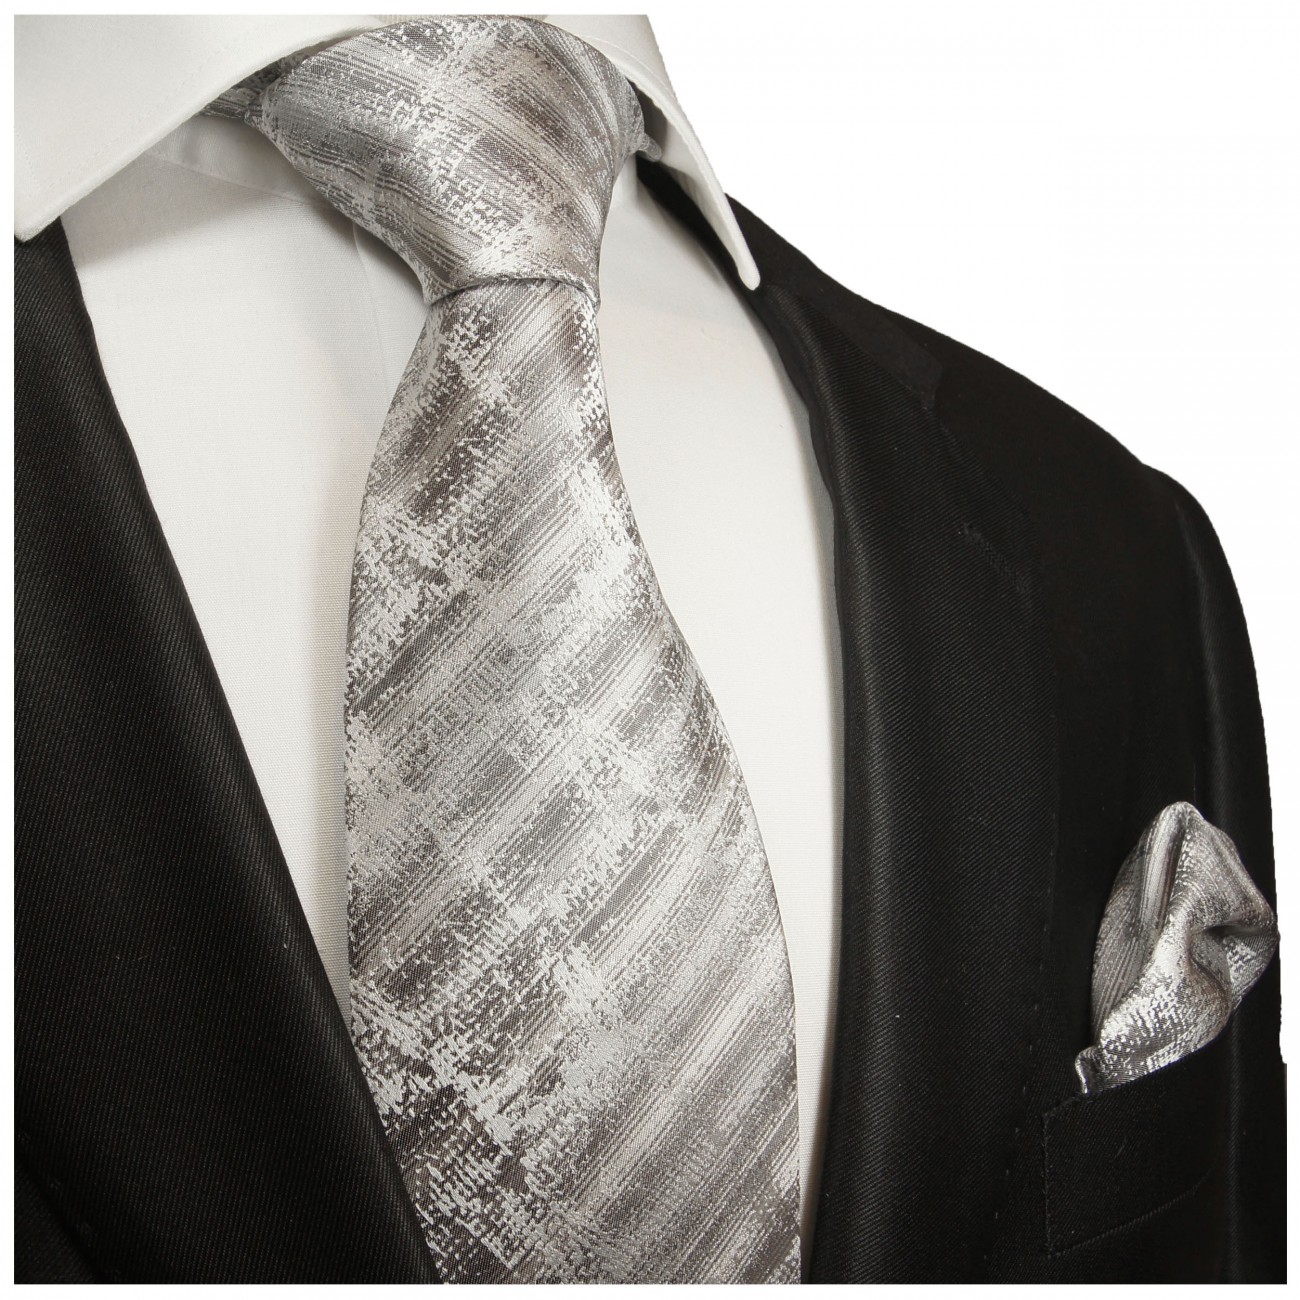 Extra lange Krawatte 165cm - silber grau